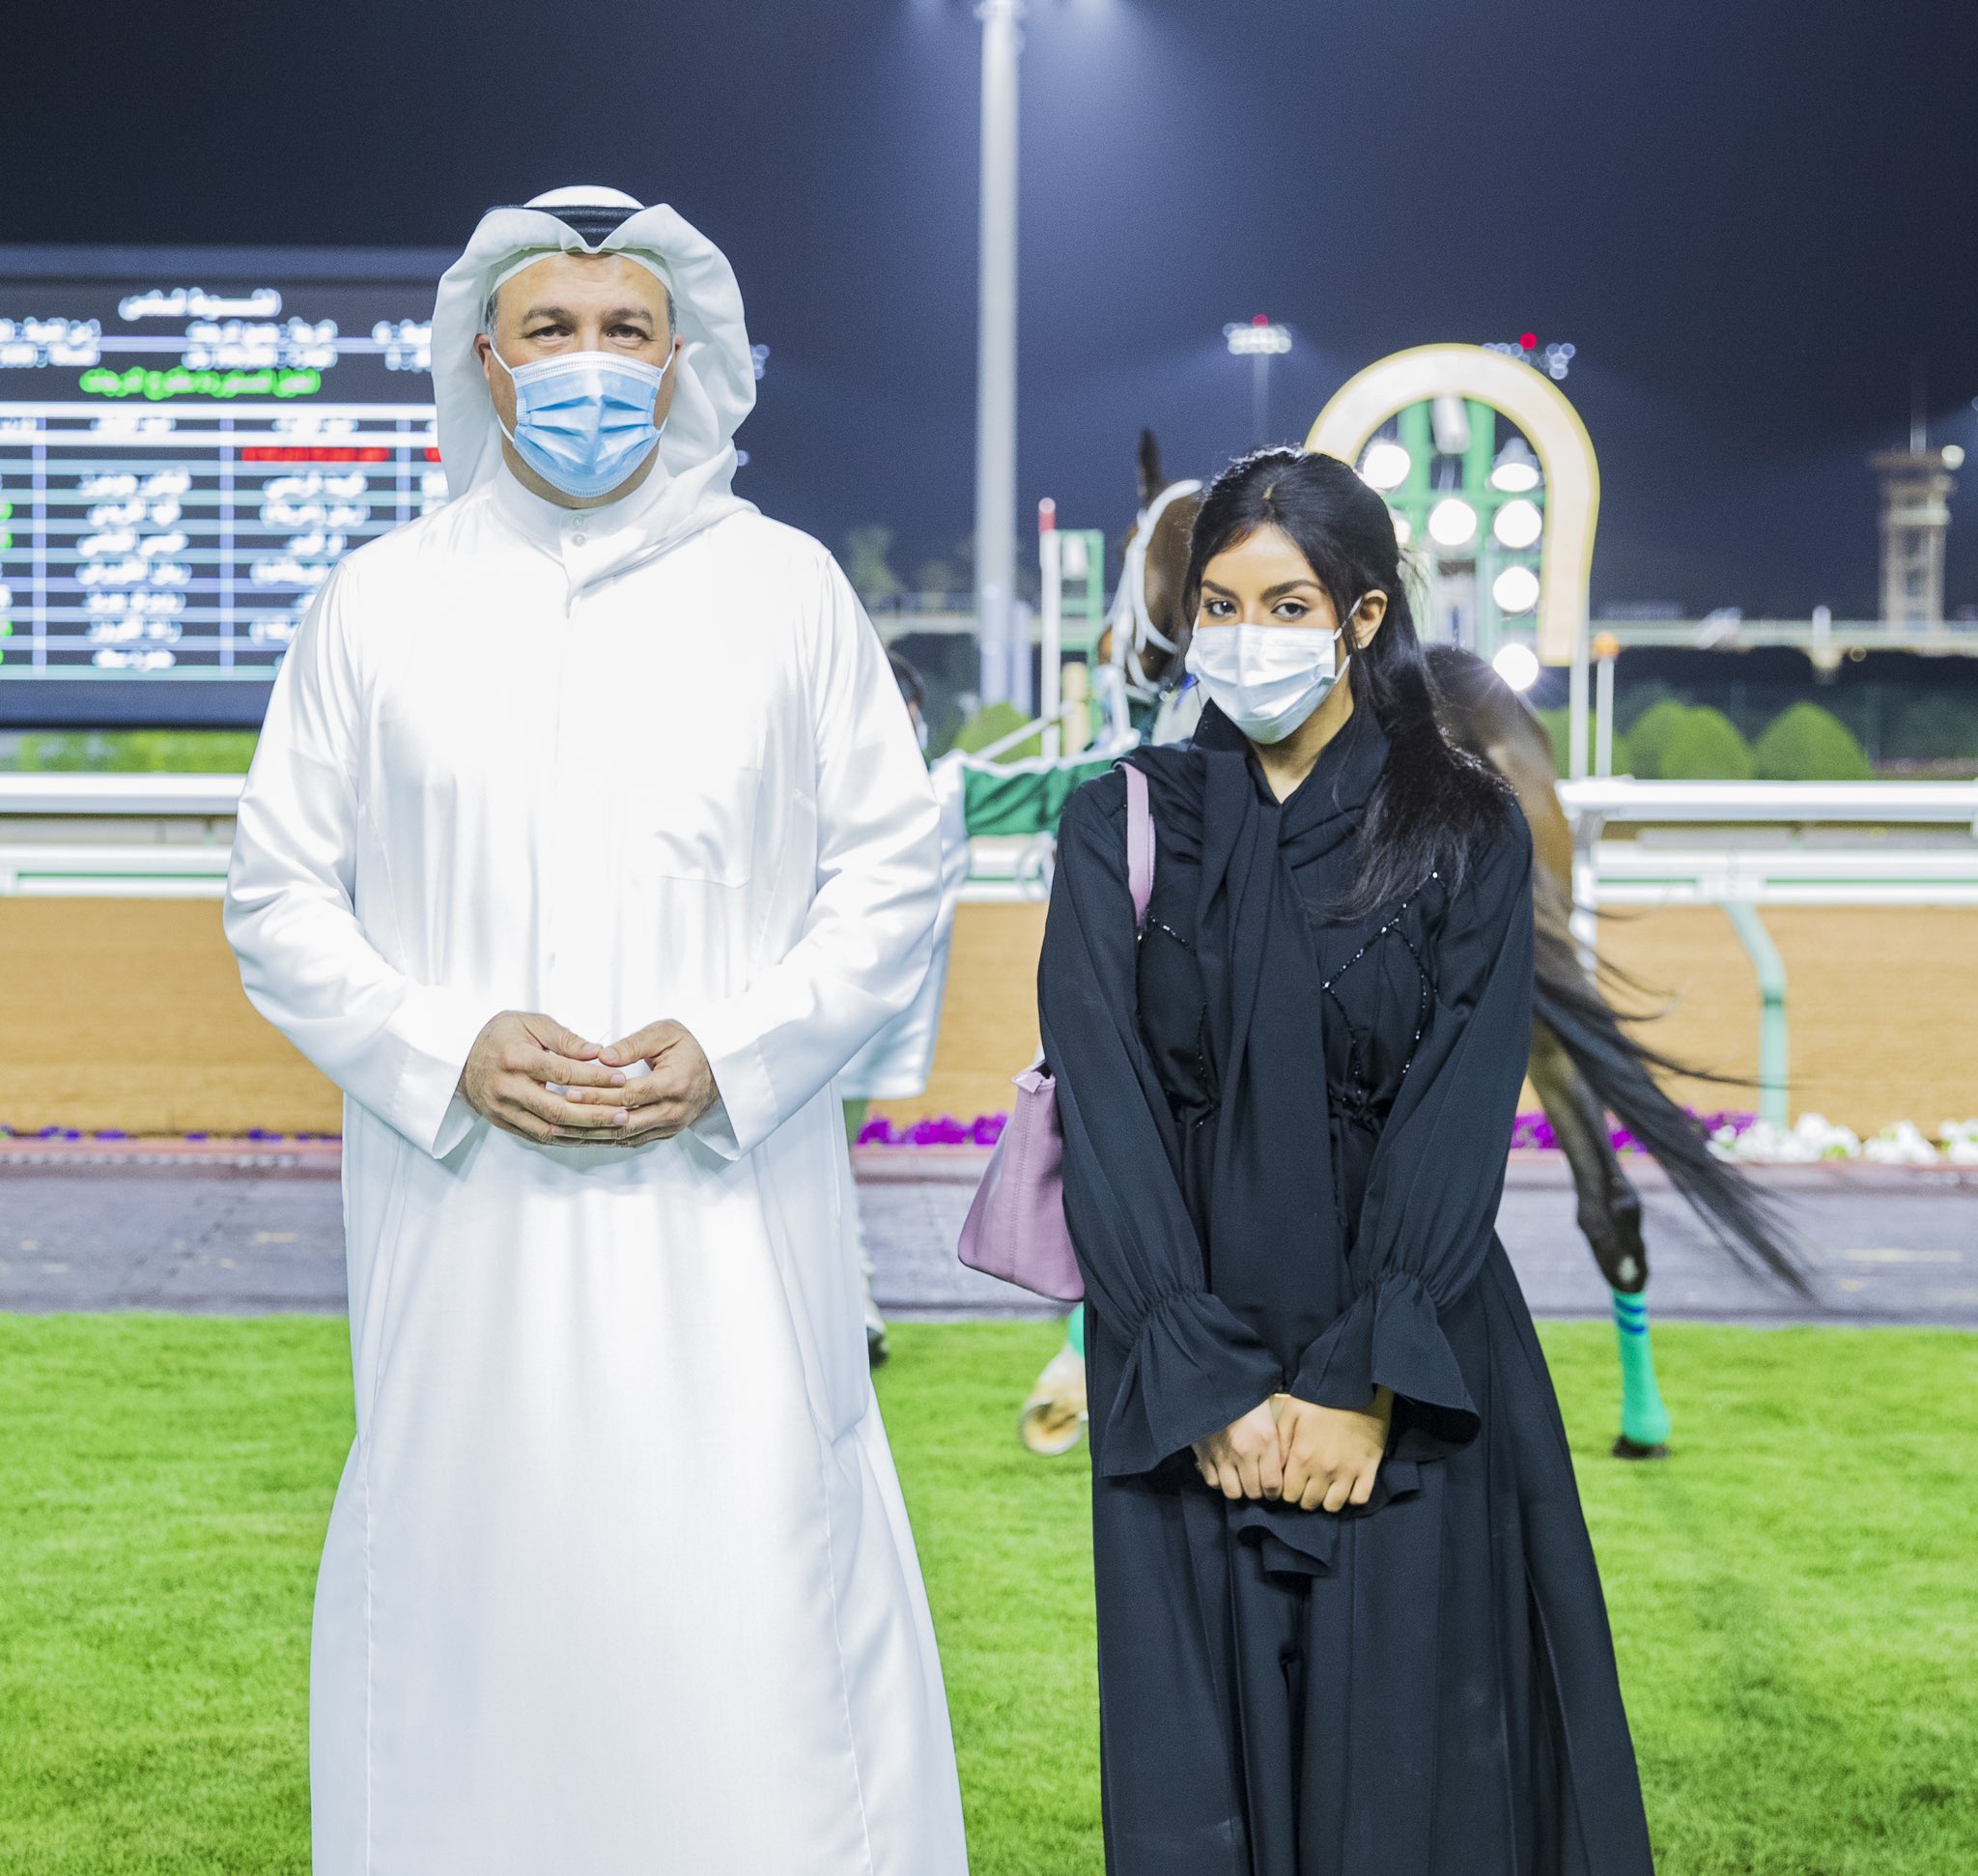 أمل فيصل أول فارسة تطلب رخصة متدربة في نادي سباقات الخيل السعودي